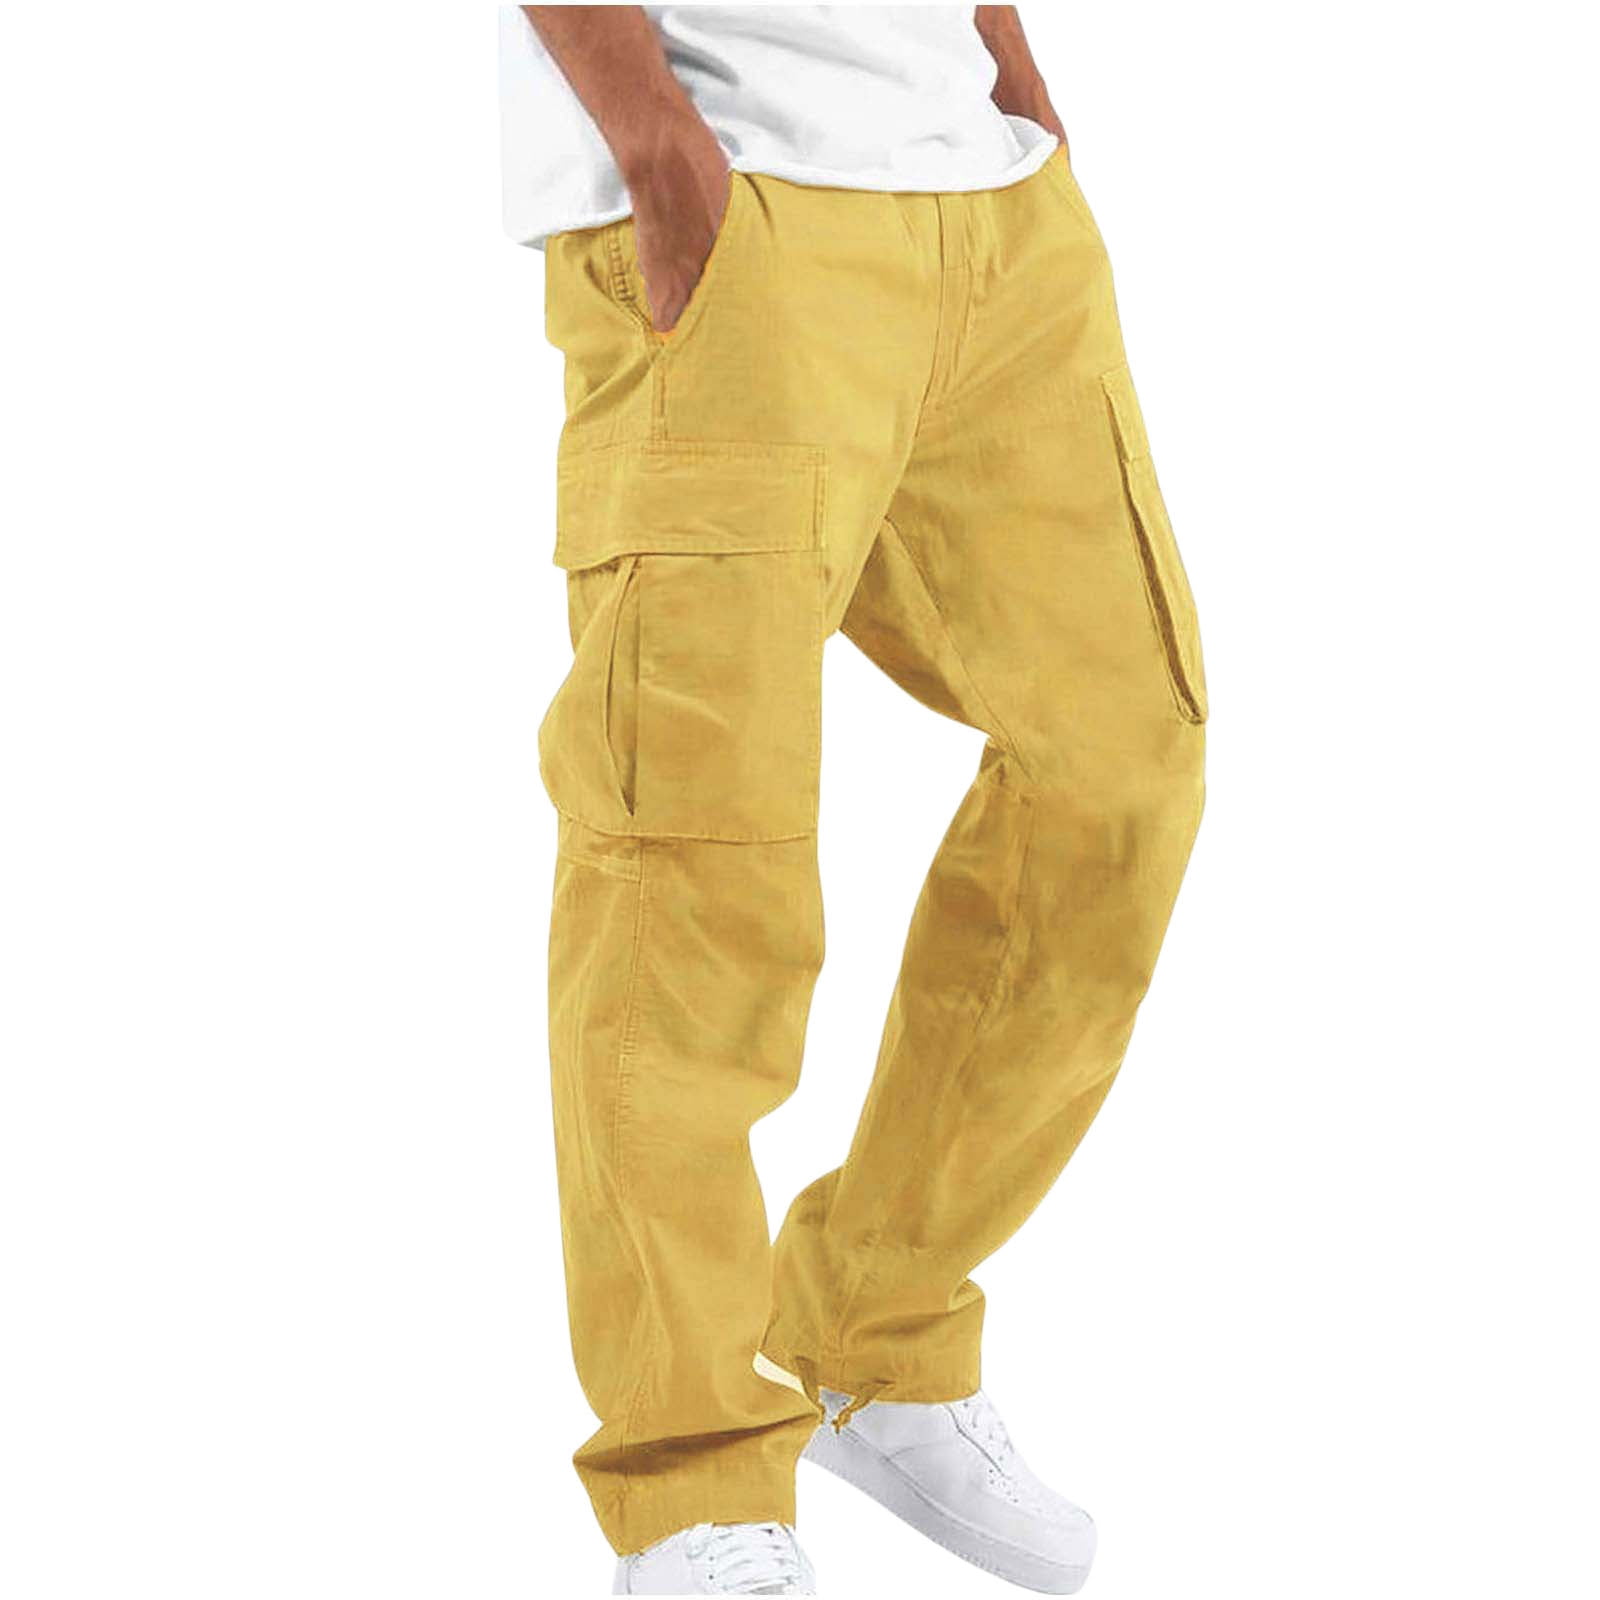 Men's Pants & Shorts Sale: Cargo, chino, cotton, linen | Diesel